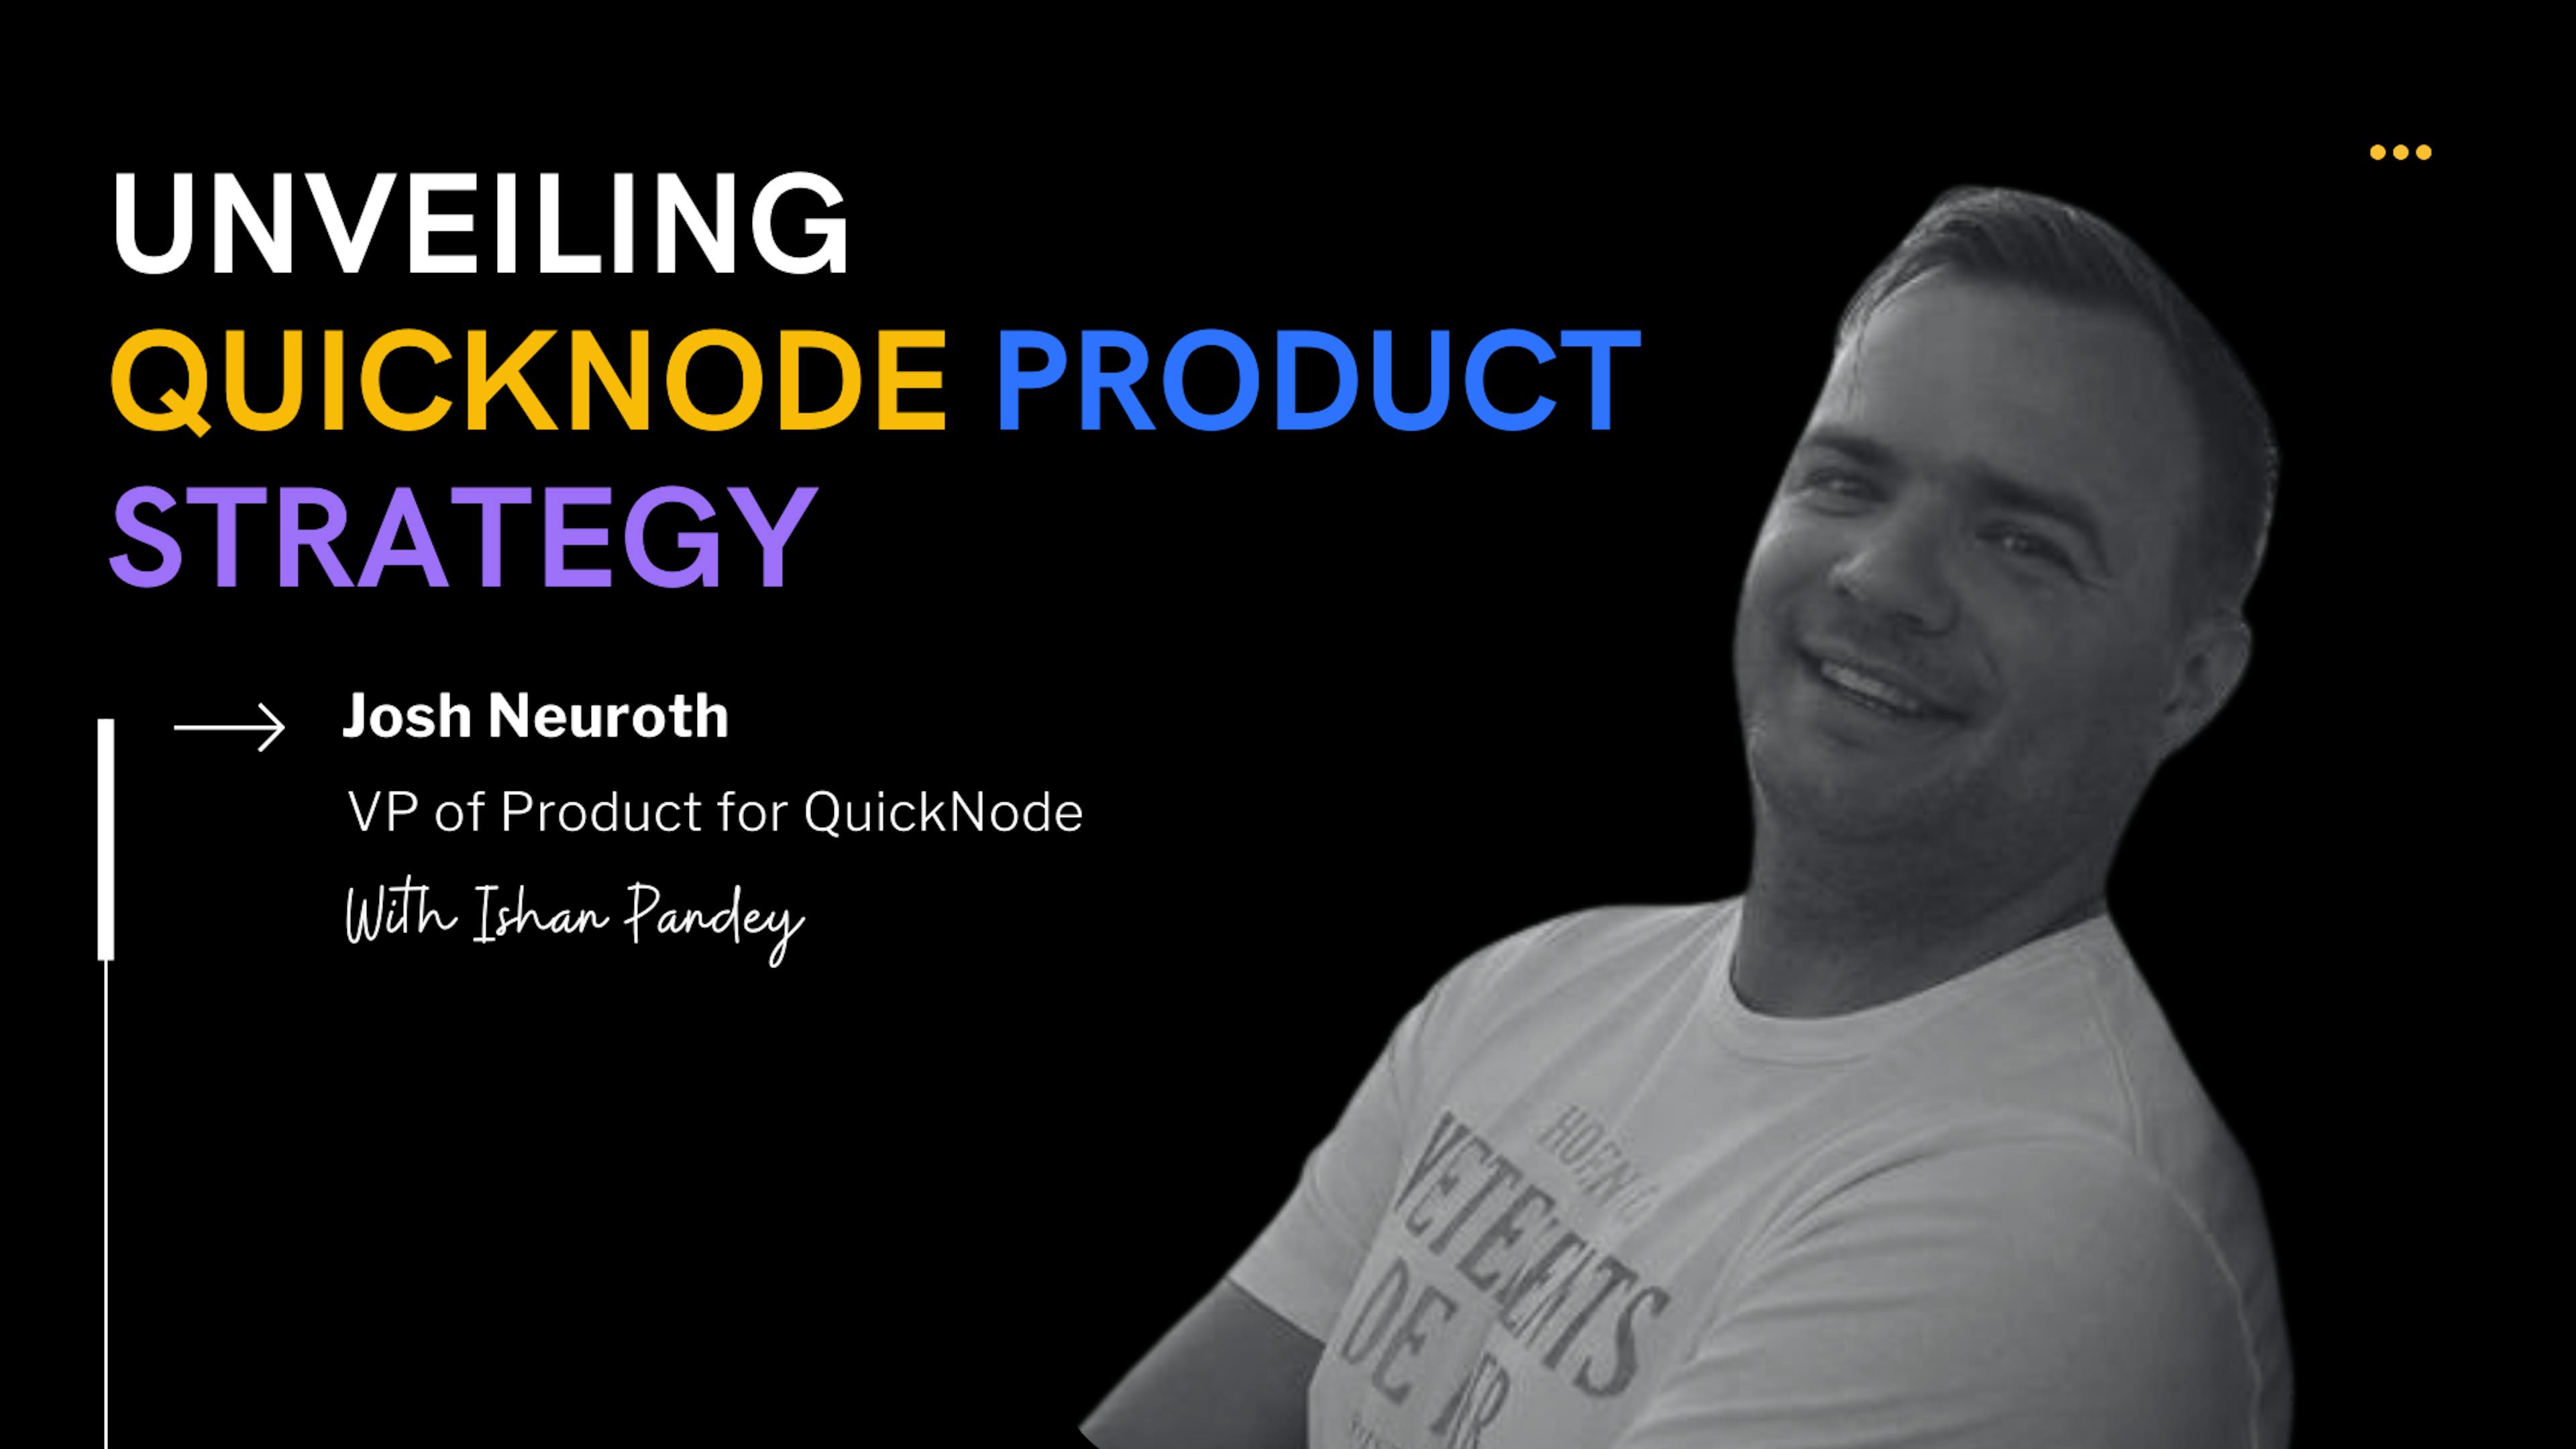 featured image - Vice-presidente de produto da QuickNode, Josh Neuroth, sobre infraestrutura Blockchain, rollups e inovação Web3